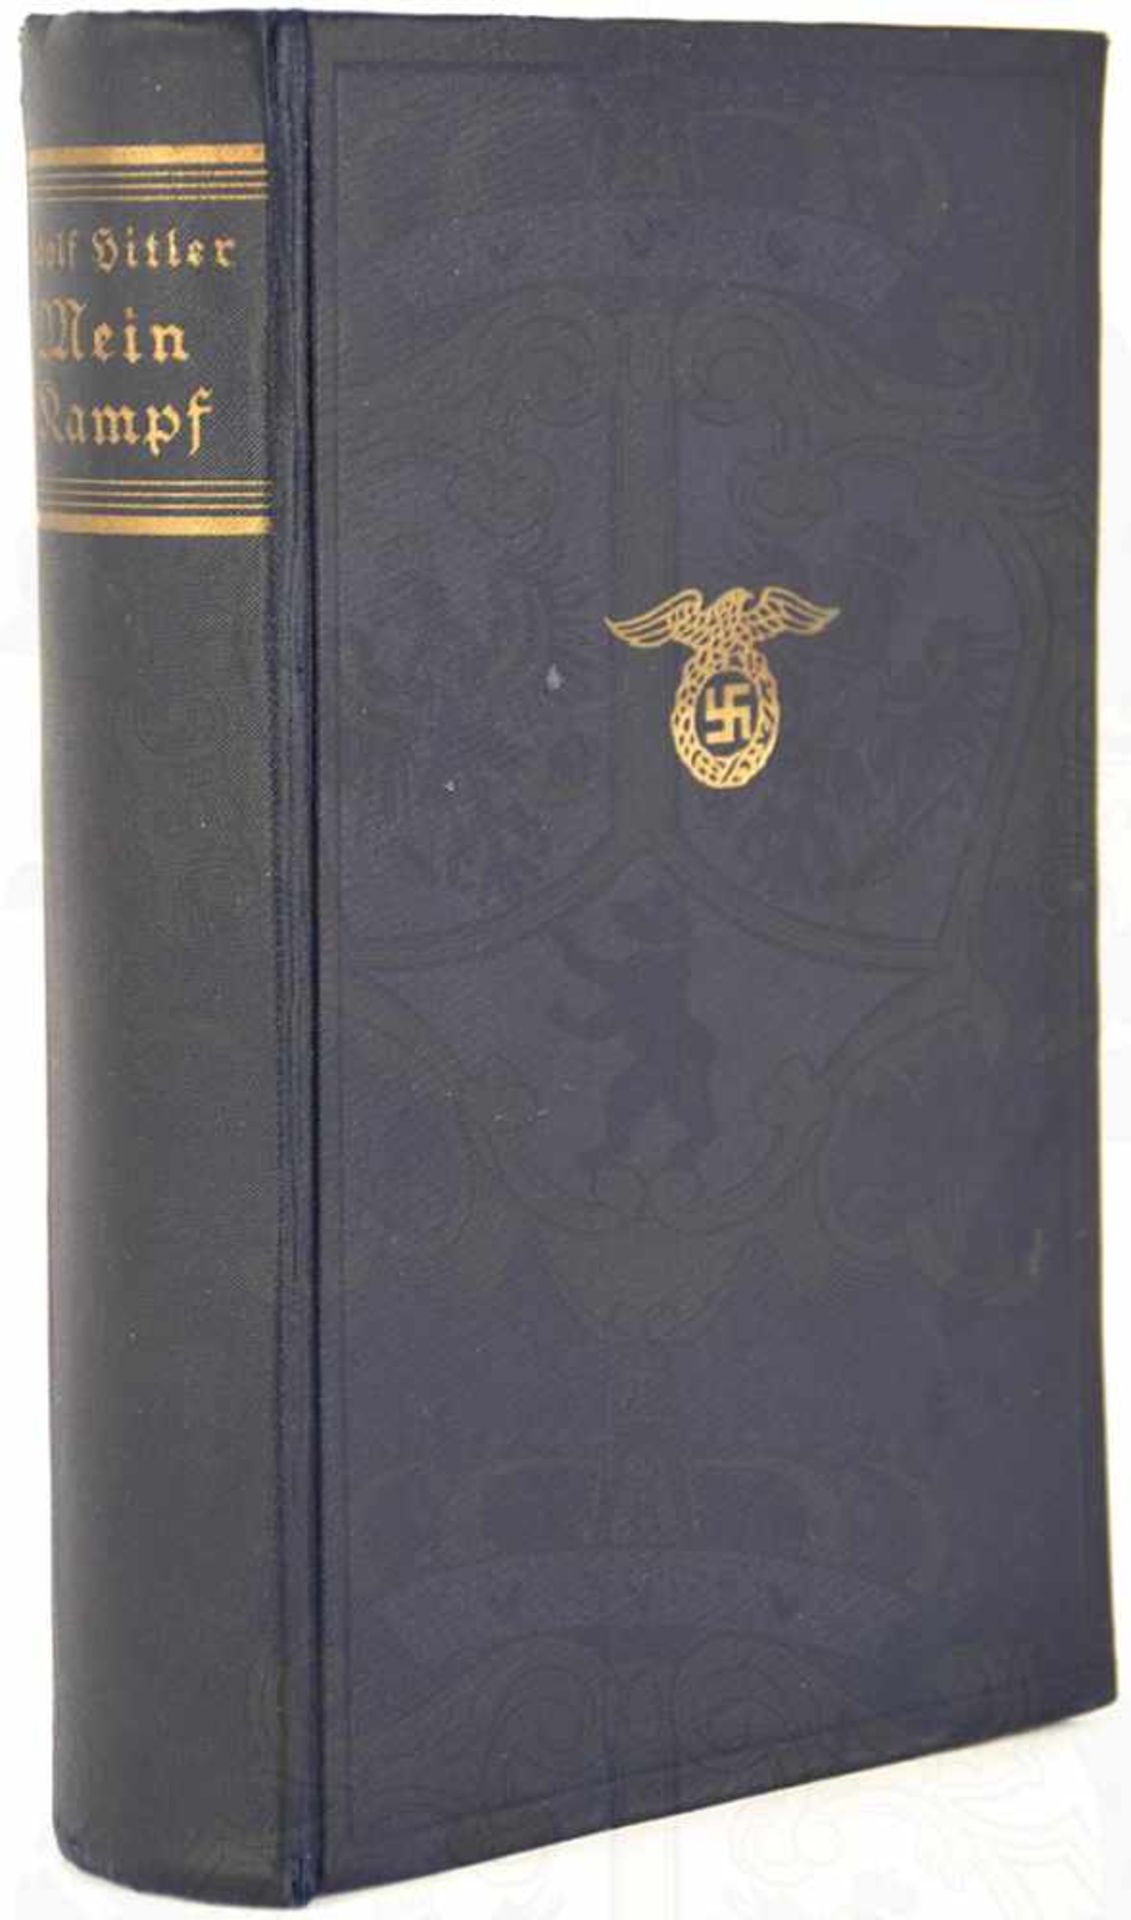 MEIN KAMPF, A. Hitler, Volksausgabe, Eher Verlag, München 1933, 781 S., 1 Porträtbild, goldgepr.